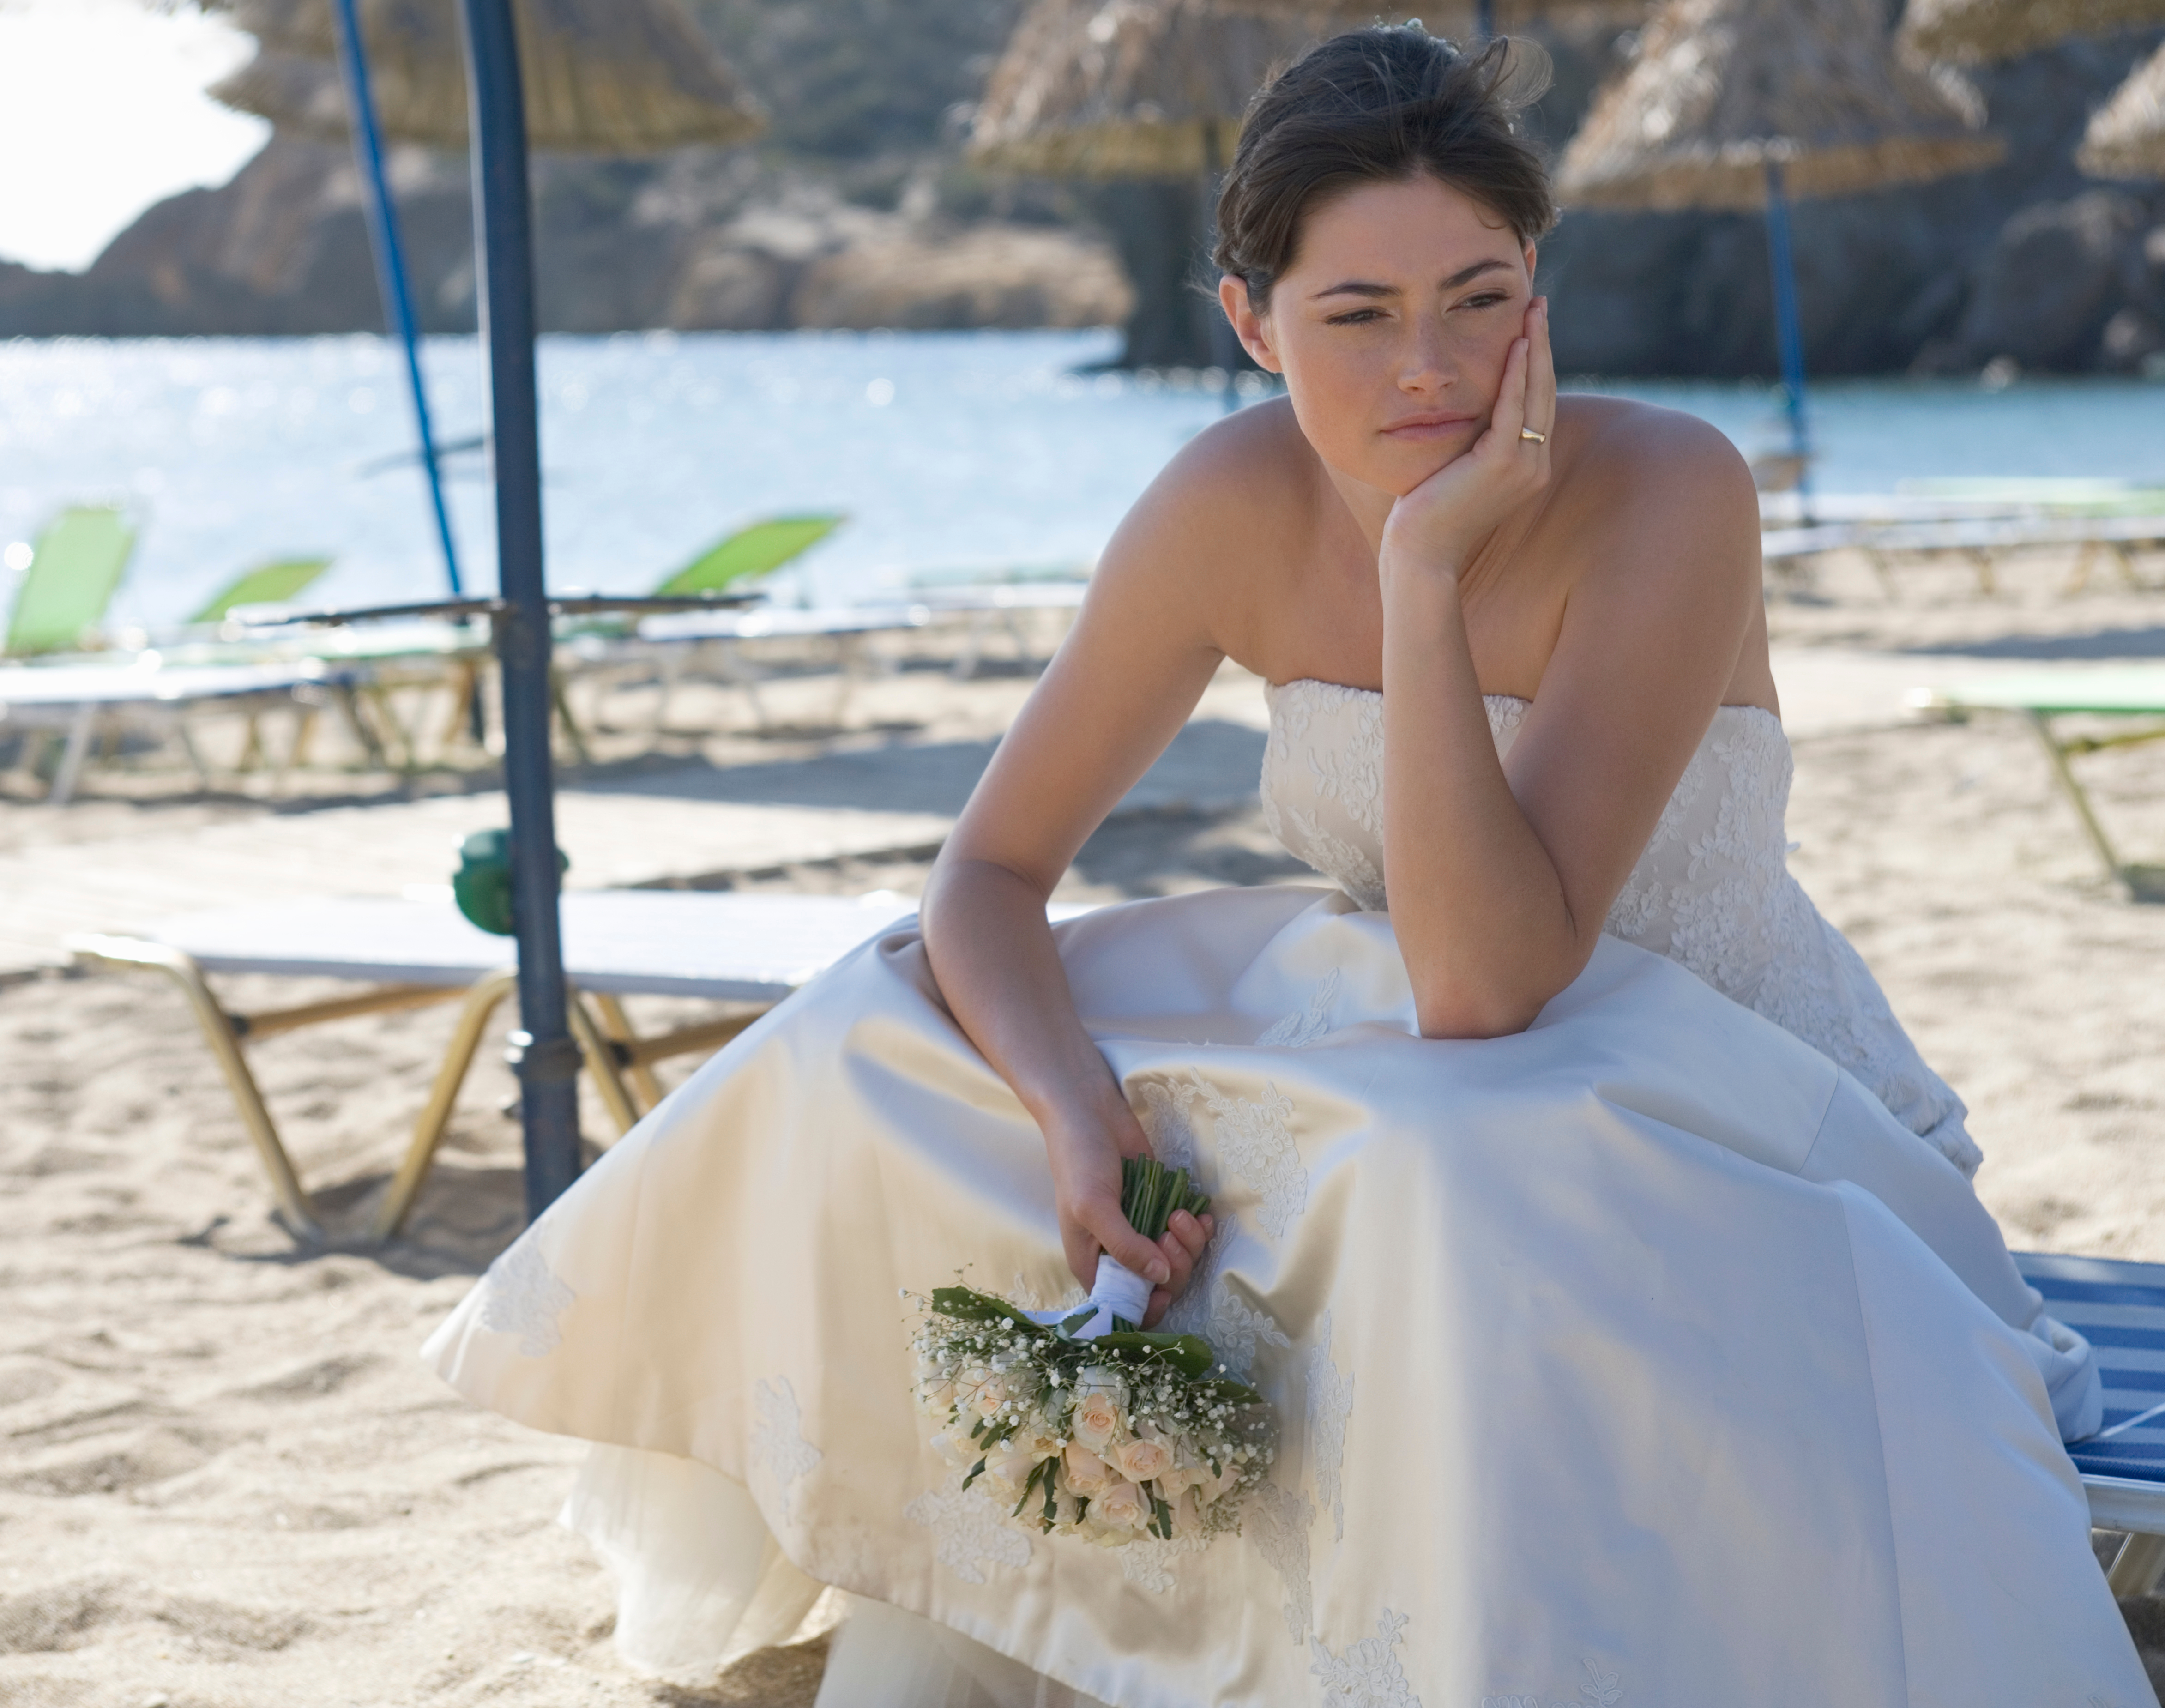 Das Bild einer Braut, die an ihrem besonderen Tag verzweifelt und enttäuscht aussieht | Quelle: Shutterstock